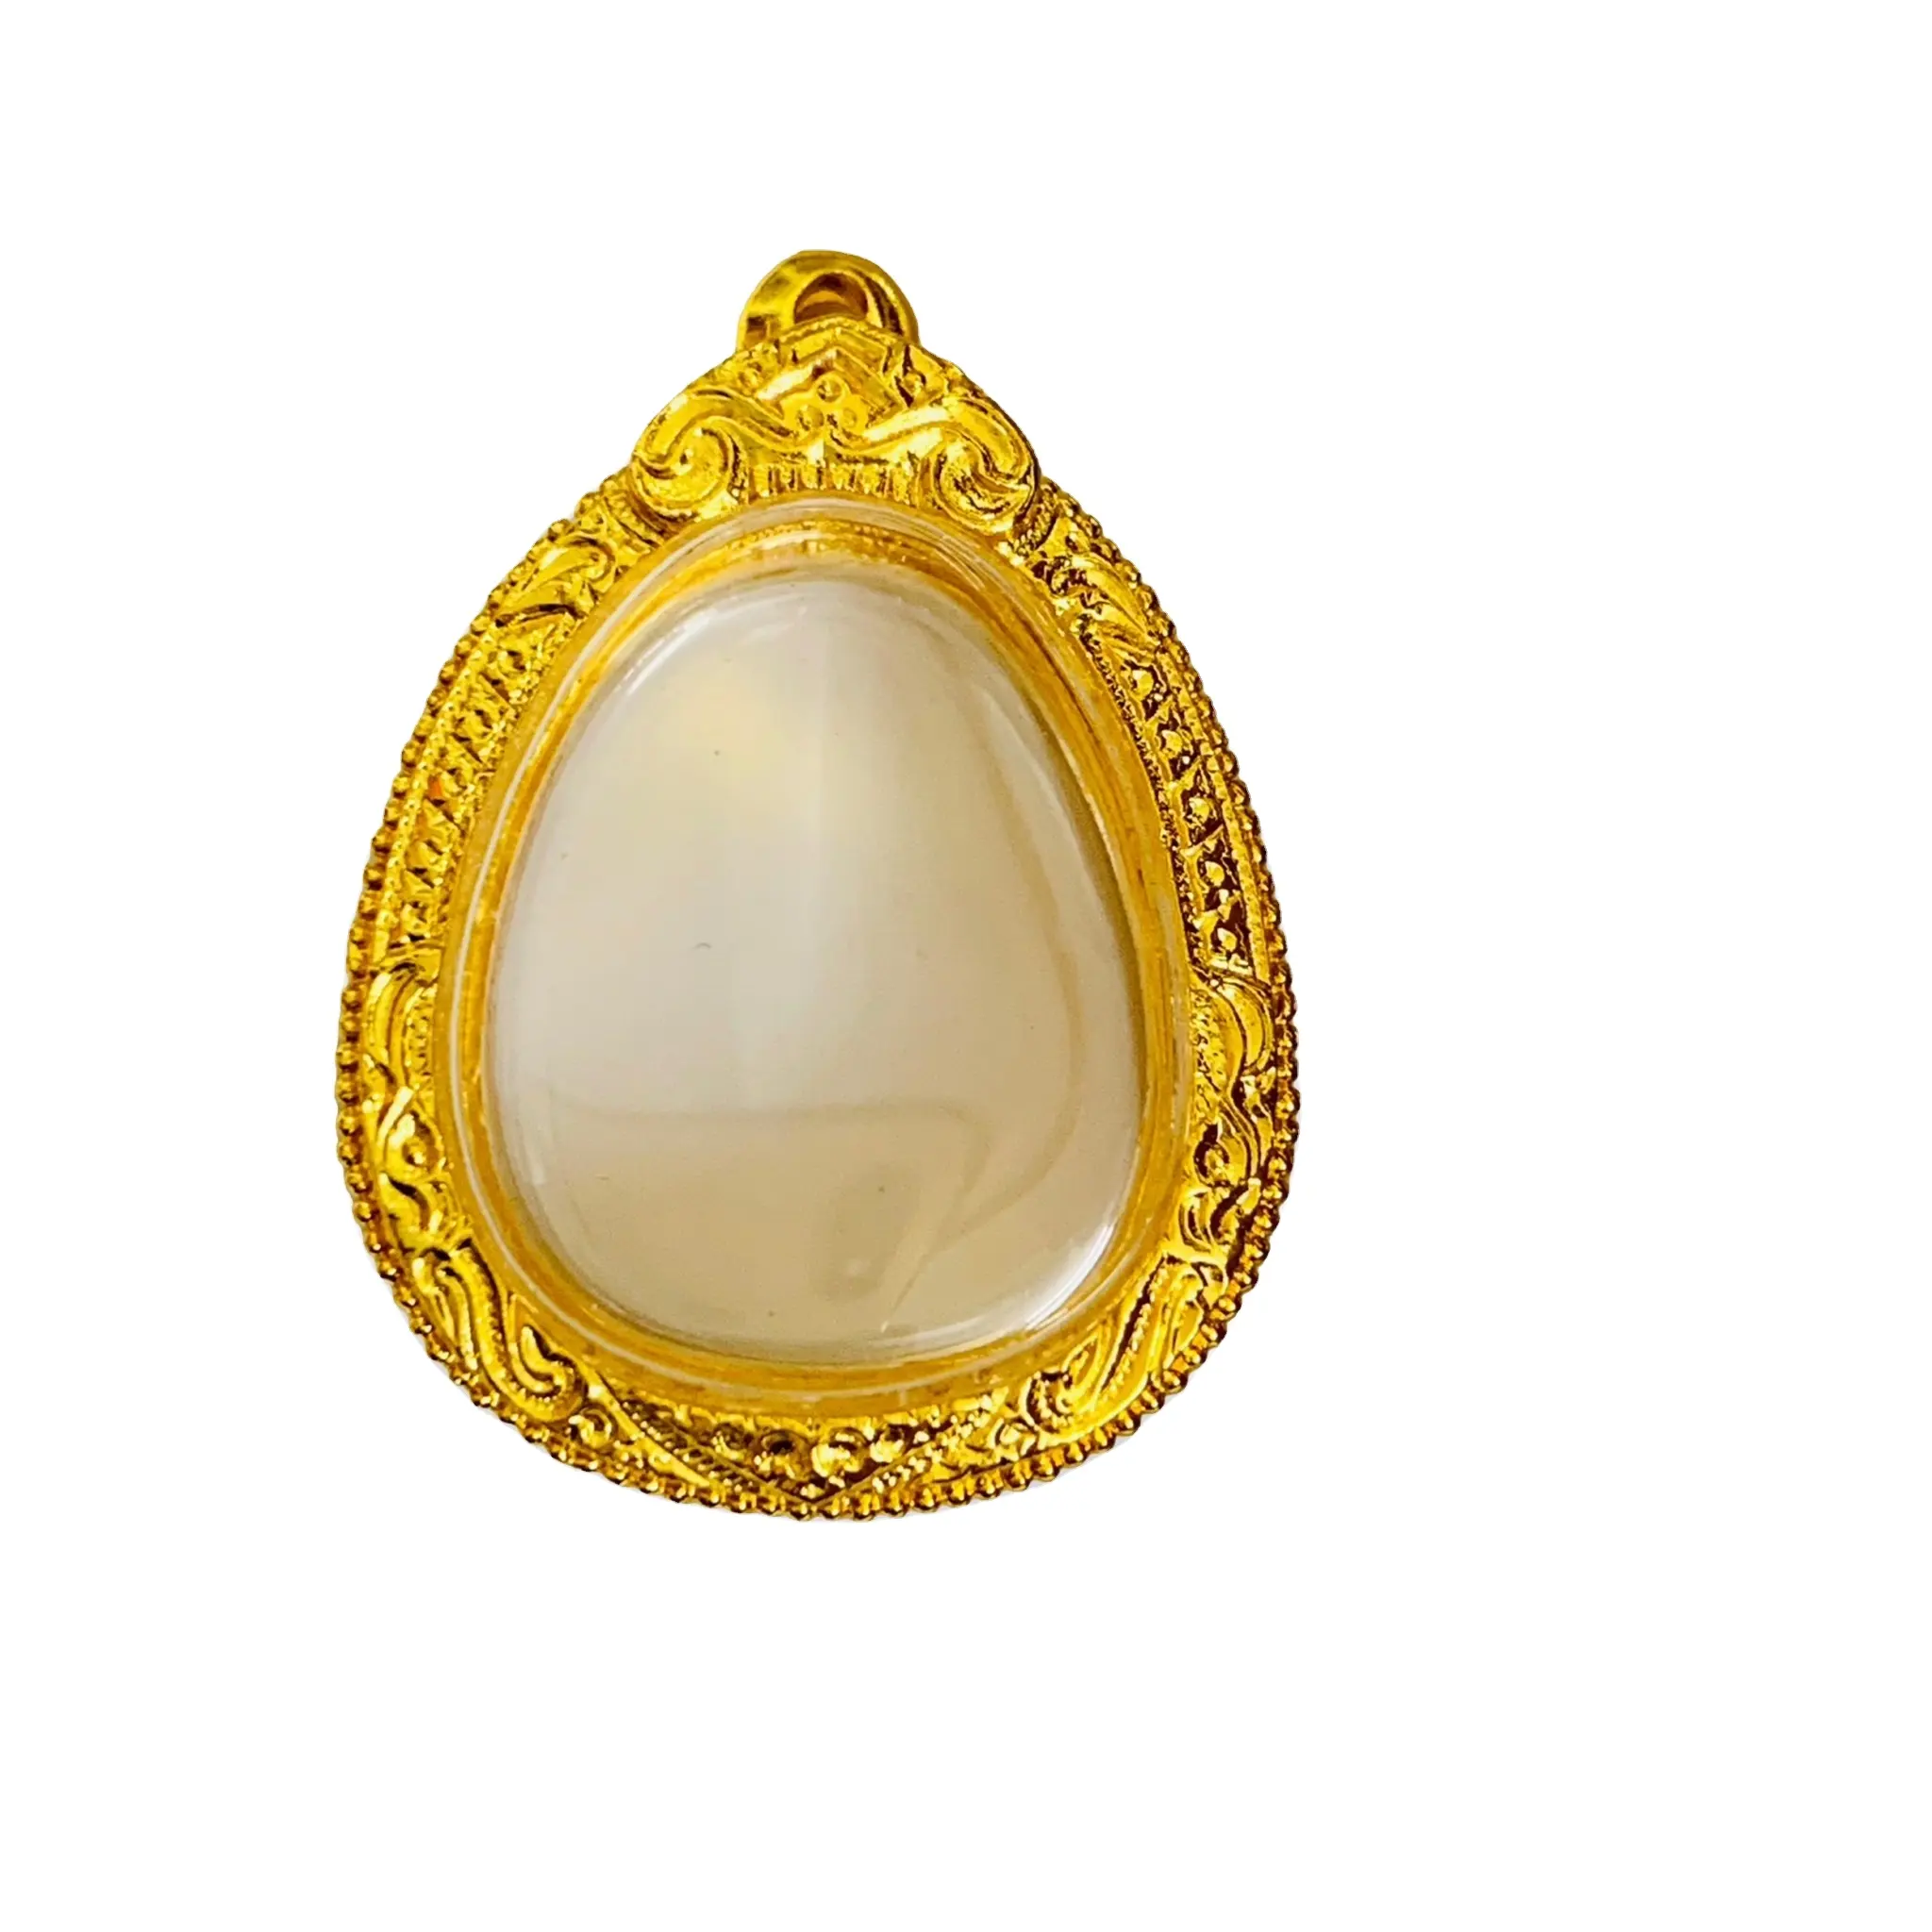 Gold gehäuse Premium Qualität aus Thailand Mikron Gold rahmen Stil LP Luang Pu Toh Phra Pidta Amulett Rahmen Schmuck Ergebnisse